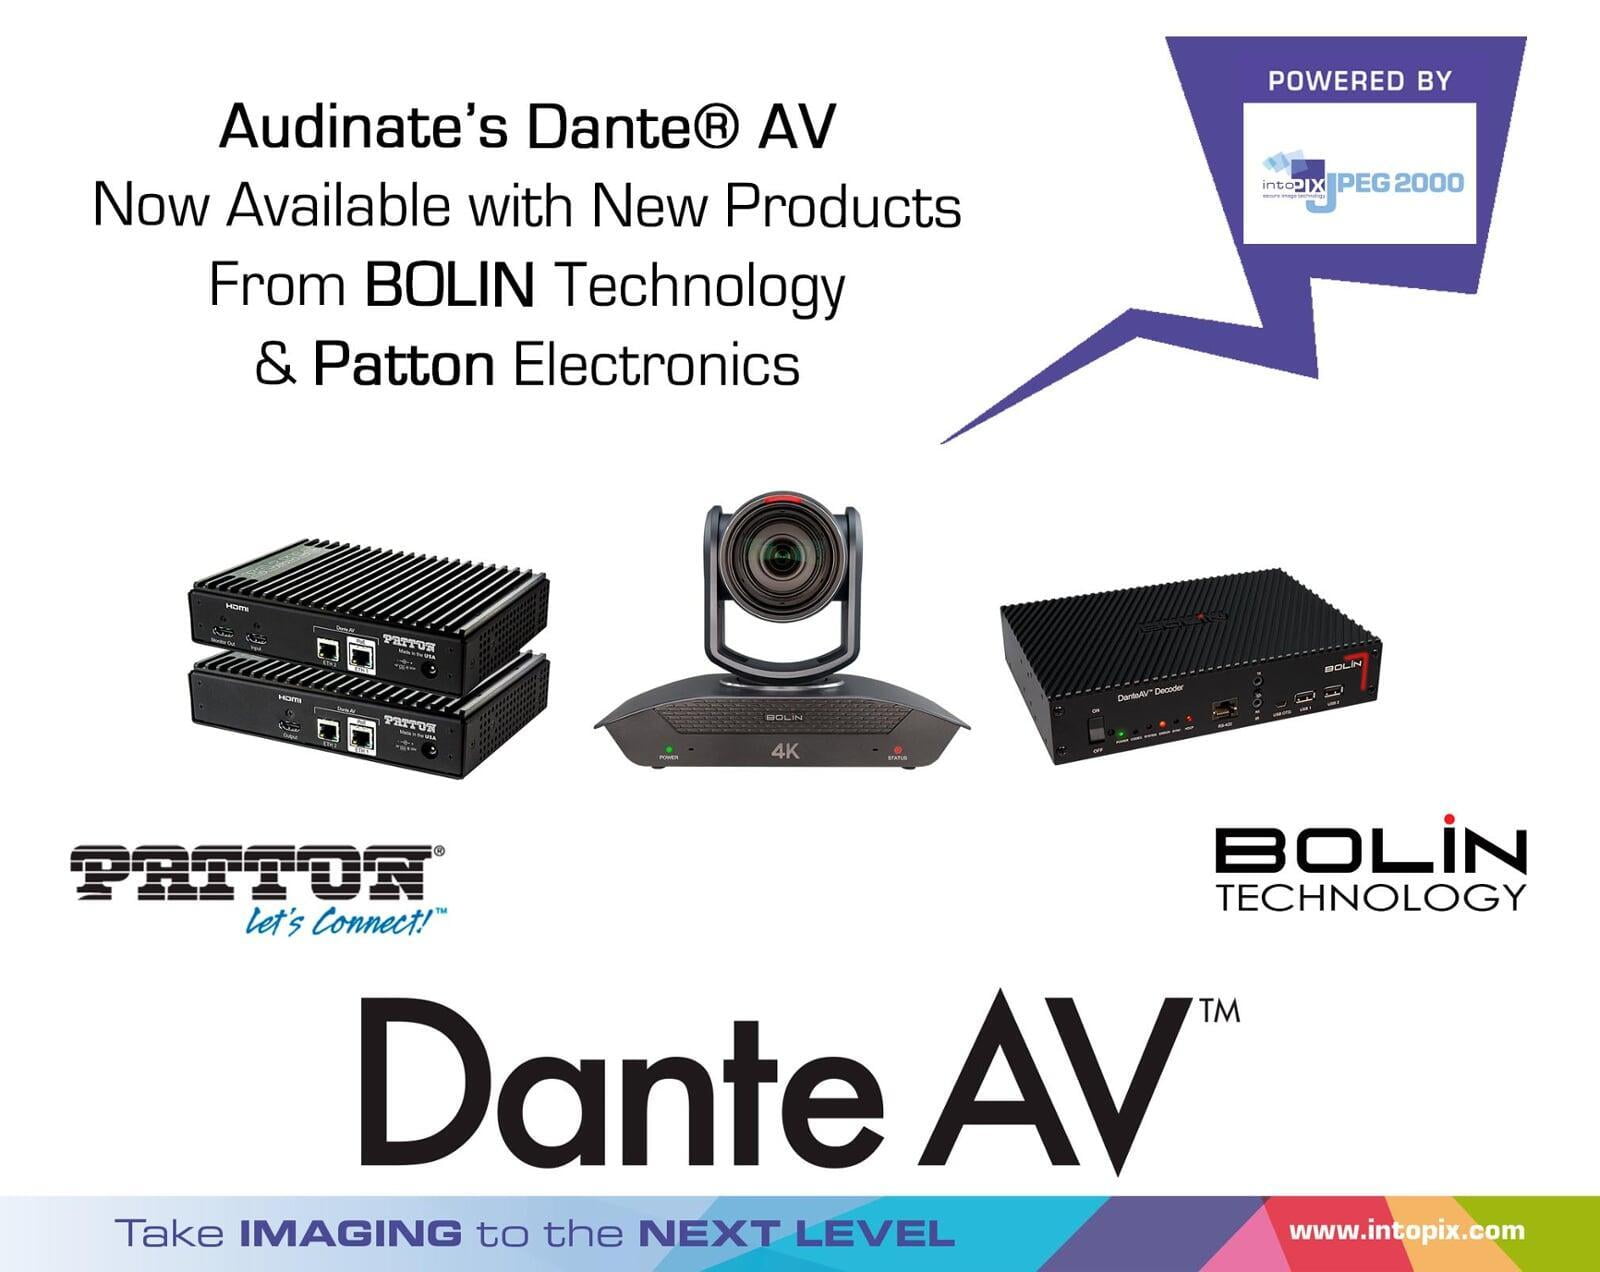 Les nouveaux produits Dante® AV de BOLIN Technology et Patton Electronics sont désormais disponibles.